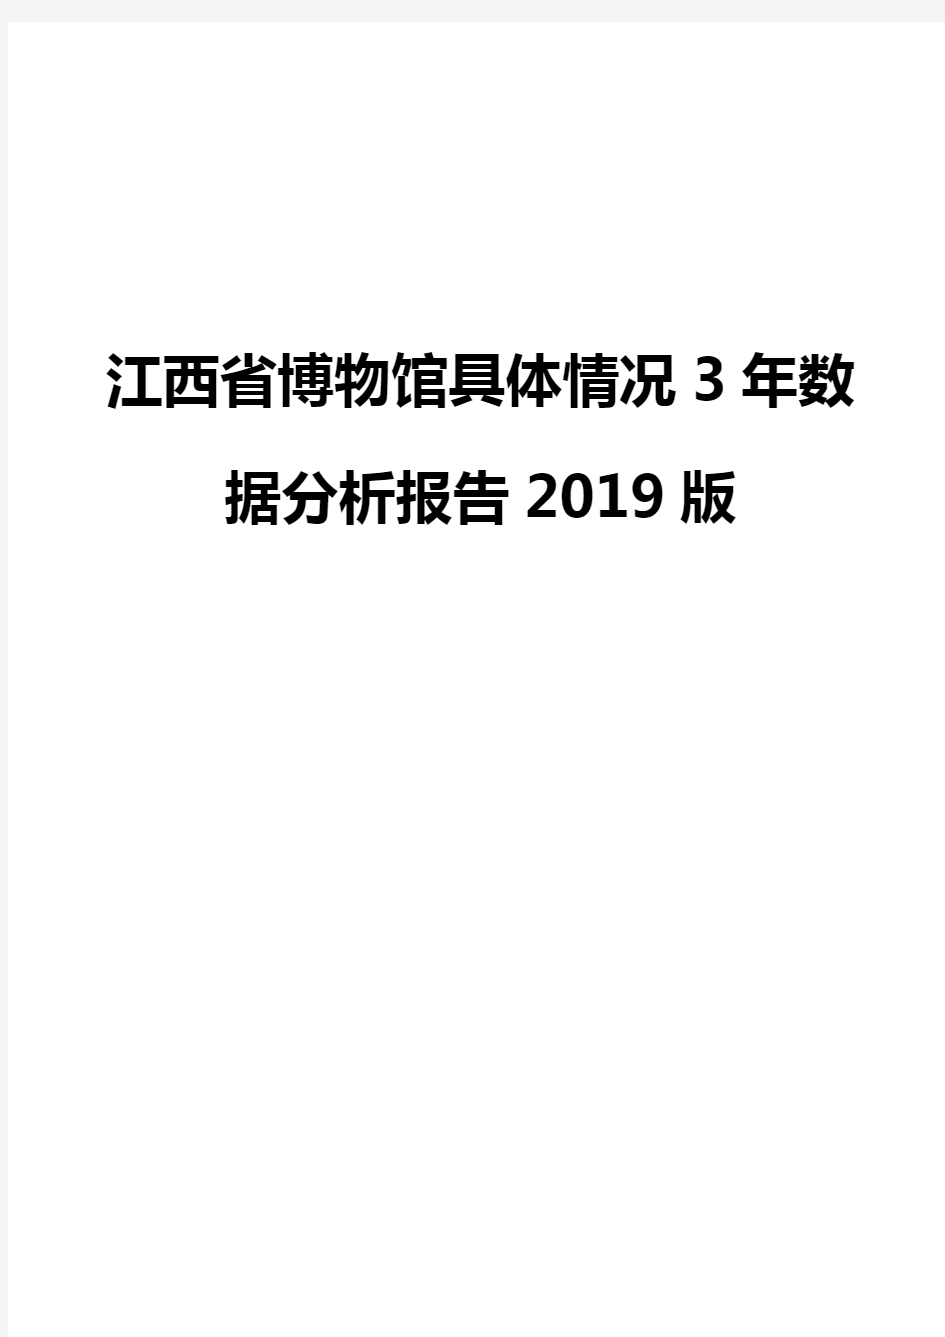 江西省博物馆具体情况3年数据分析报告2019版